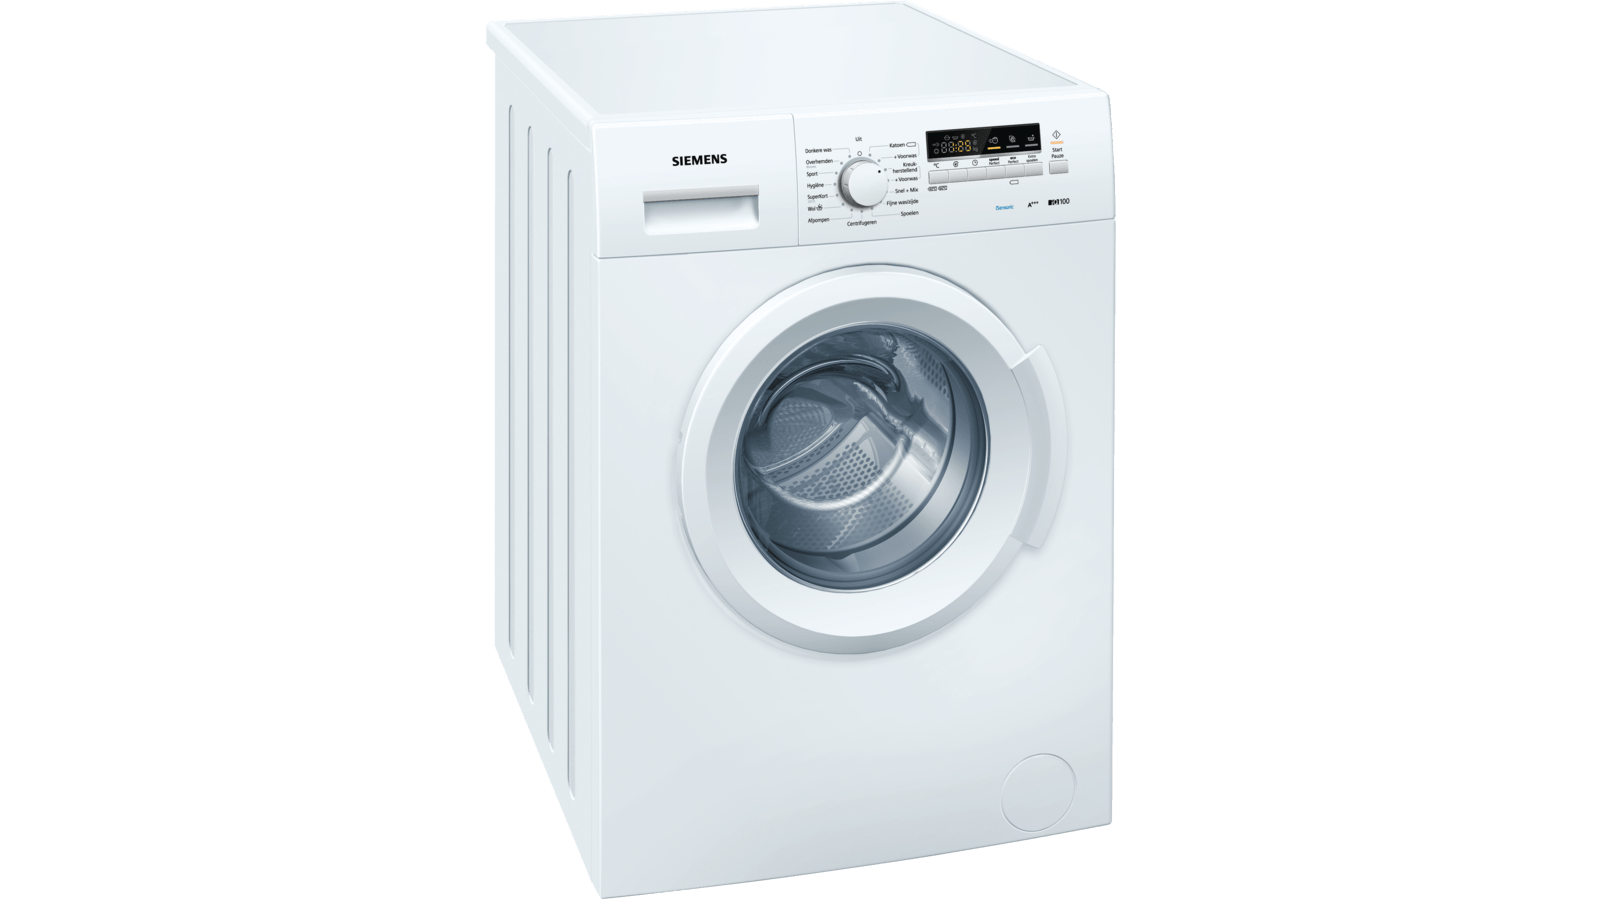 Tolk informatie detectie WM14B262NL Wasmachine, voorlader | Siemens huishoudapparaten NL